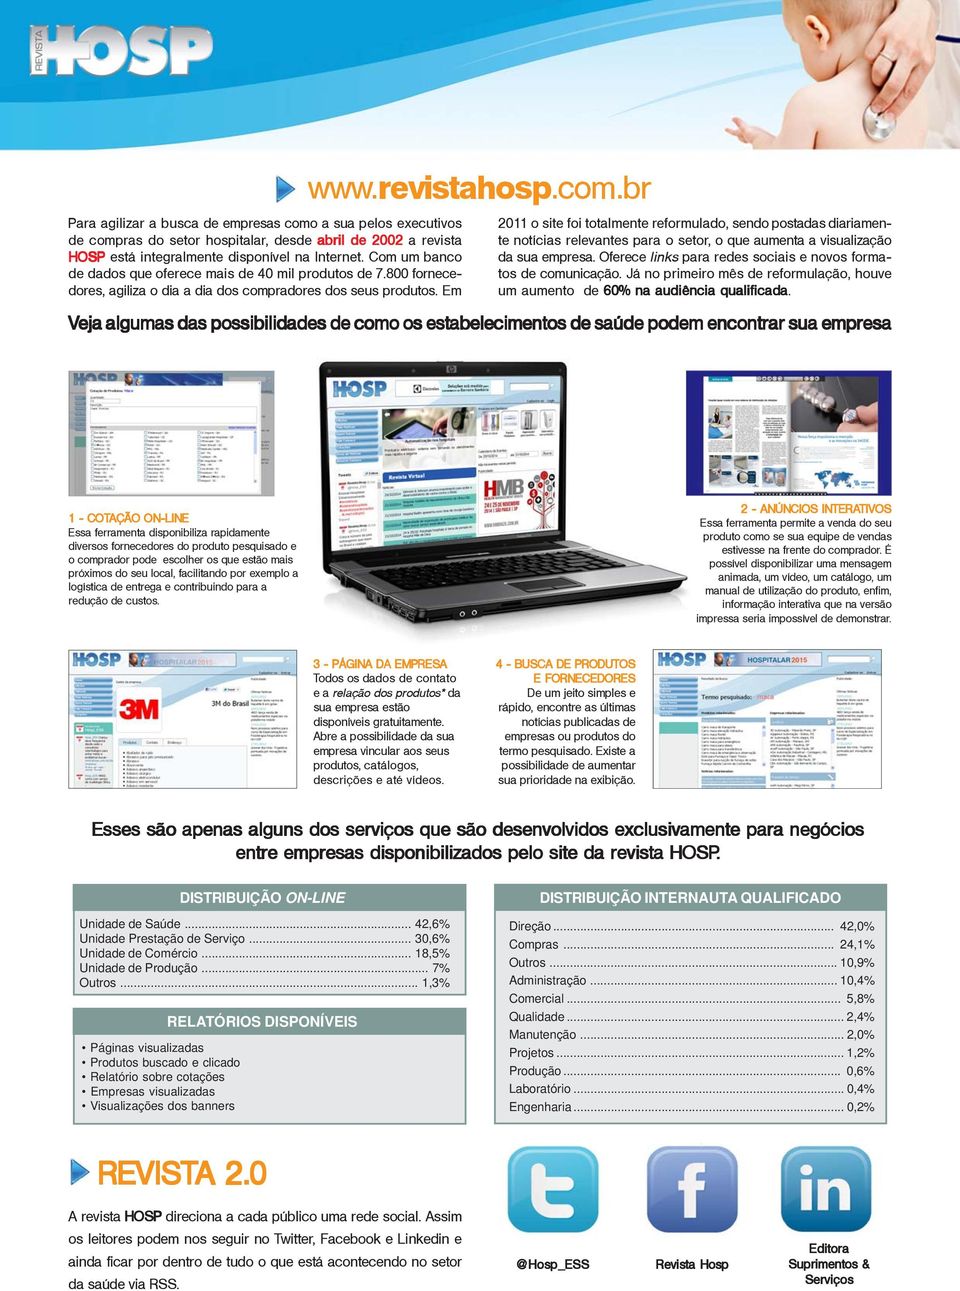 radores dos seus produtos. Em www.revistahosp.com.br 2011 o site foi totalmente reformulado, sendo postadas diariamente notícias relevantes para o setor, o que aumenta a visualização da sua empresa.